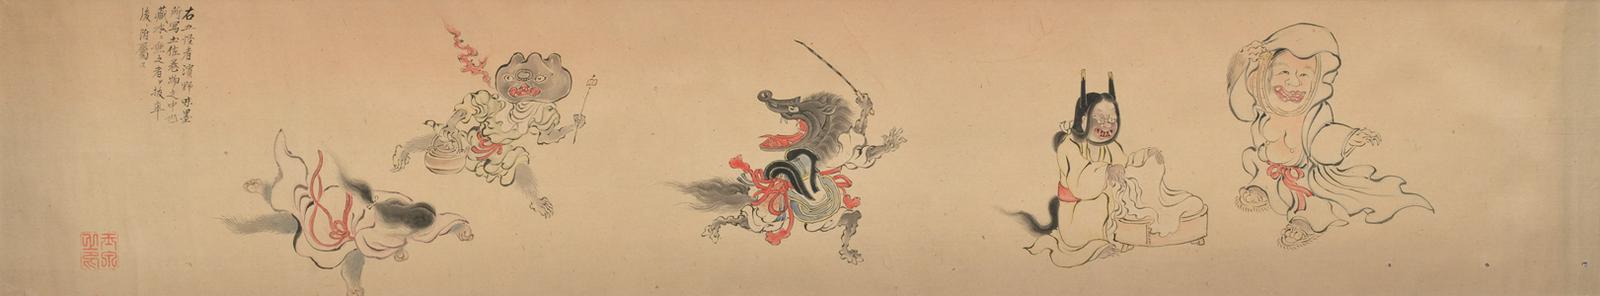 Rdeča nit razstave je spreminjanje upodobitev yōkaijev od strah vzbujajočih pošasti do vse bolj prijaznih in očarljivih ter širšemu občinstvu domačih bitij. Foto: Slovenski etnografski muzej (SEM)